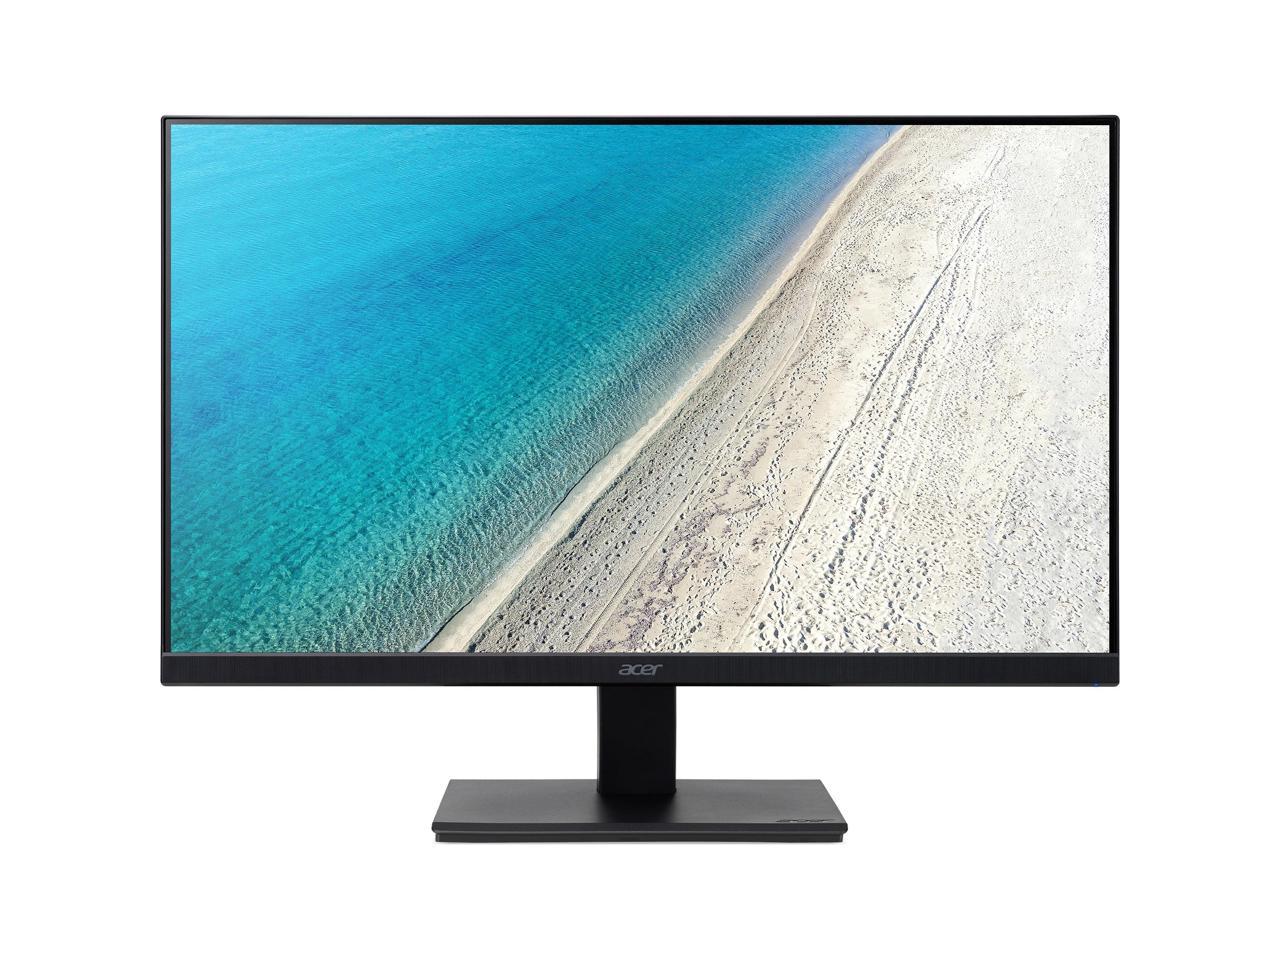 Acer V277 27" LED LCD Monitor - 16:9 - 4 ms GTG